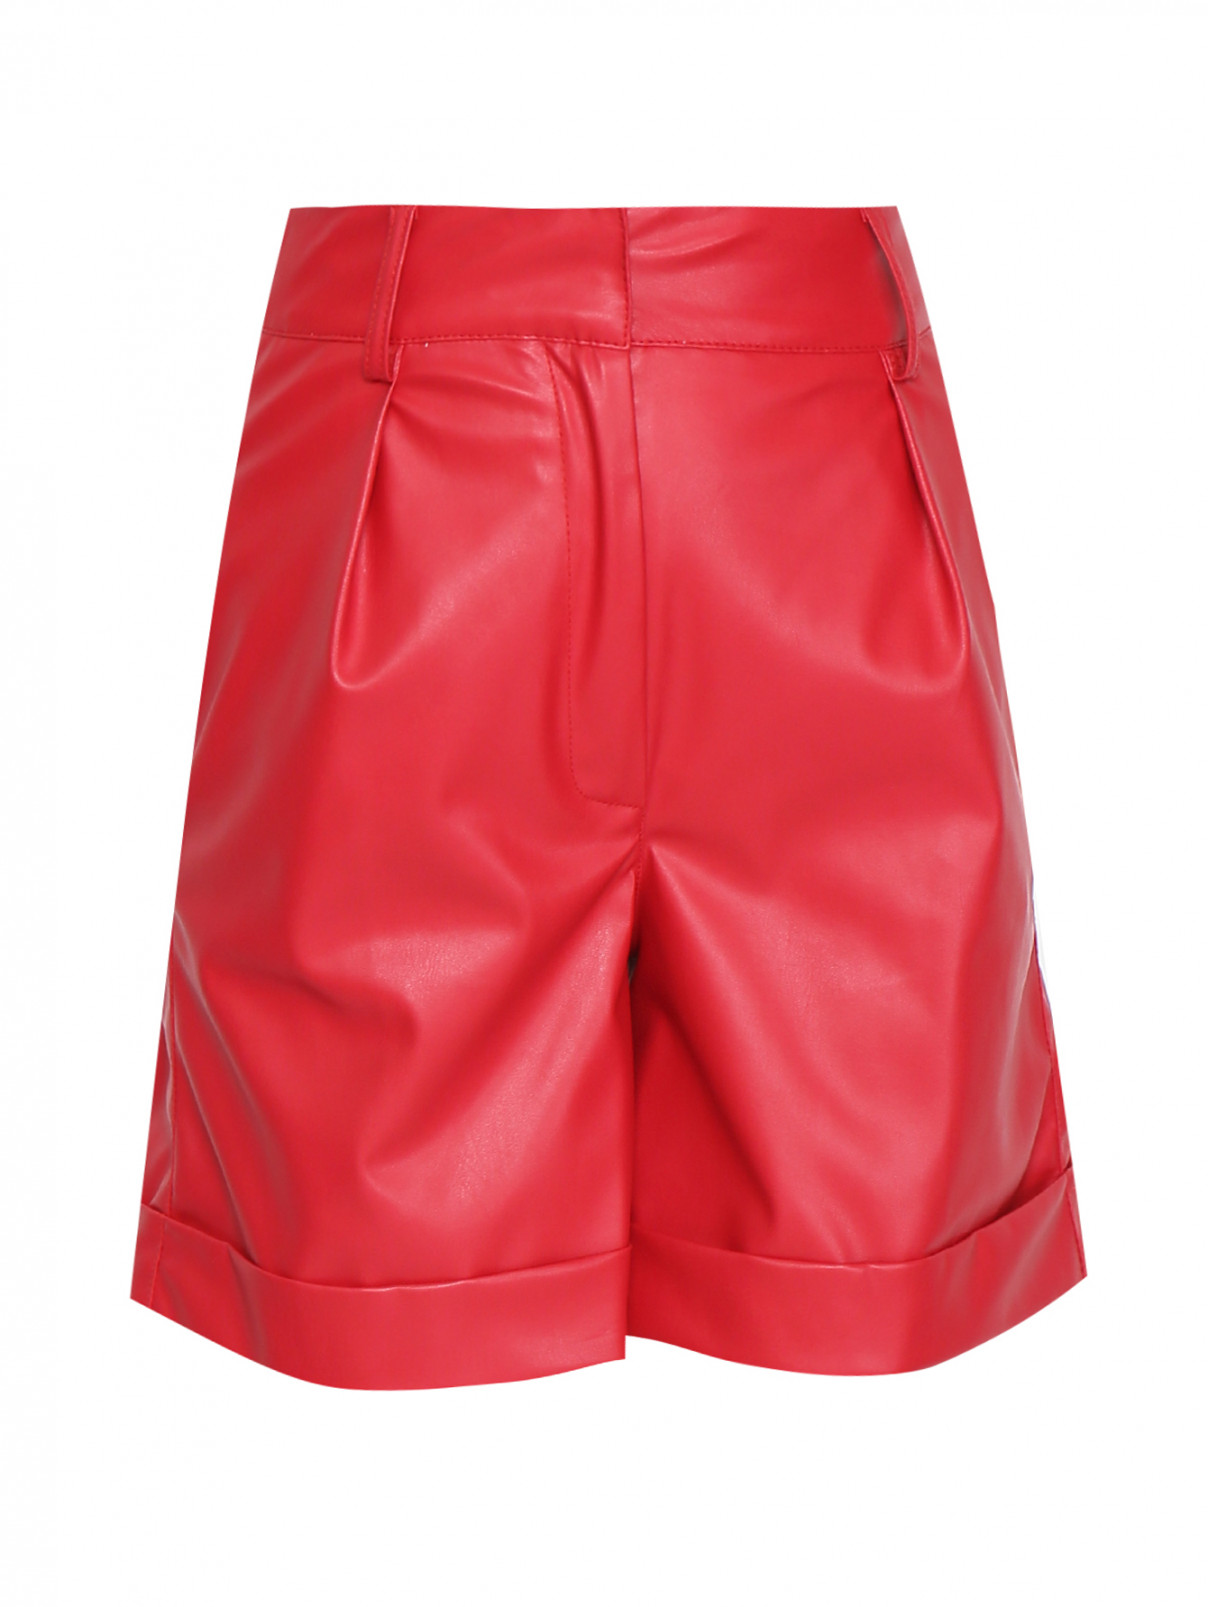 Шорты из эко-кожи с карманами Sfizio  –  Общий вид  – Цвет:  Красный